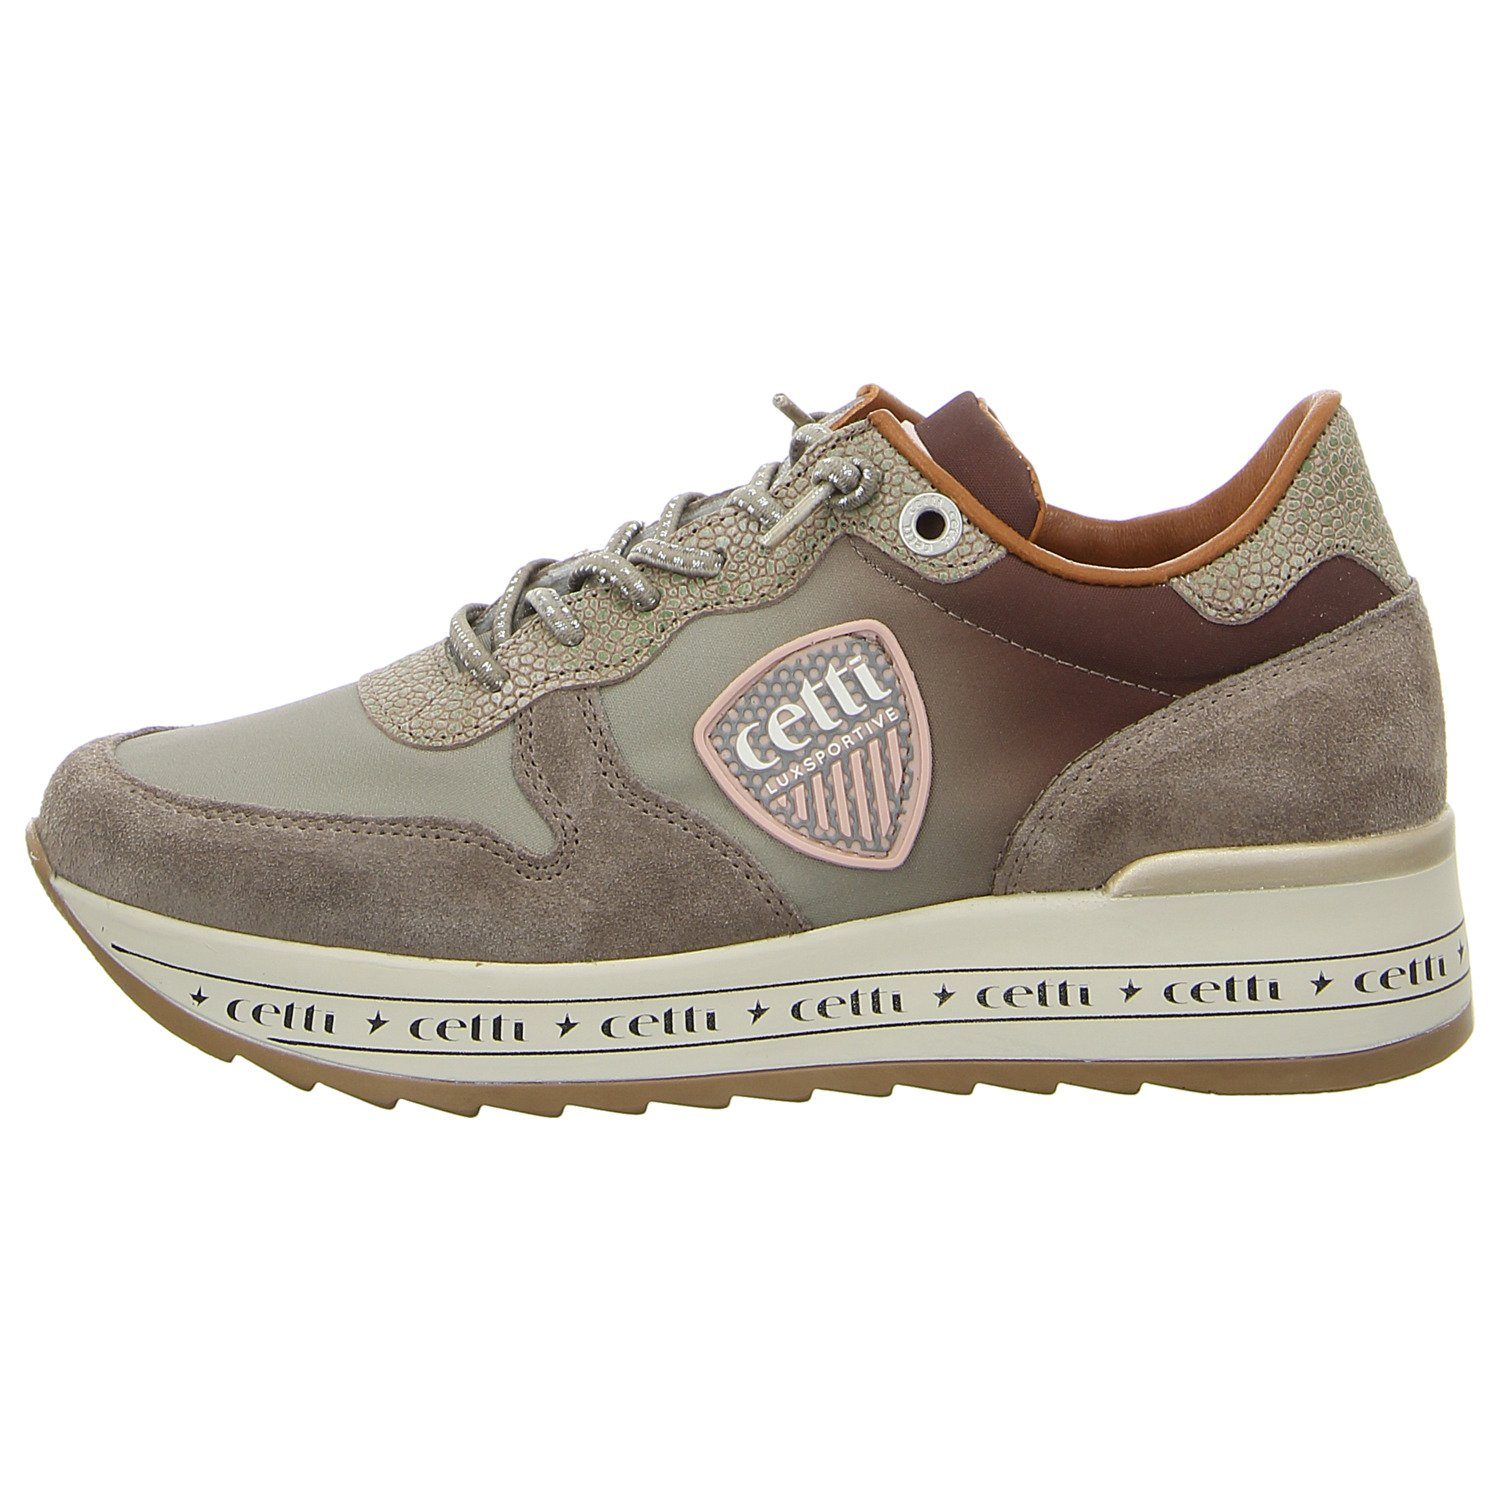 Cetti Sneaker C1251 SRA